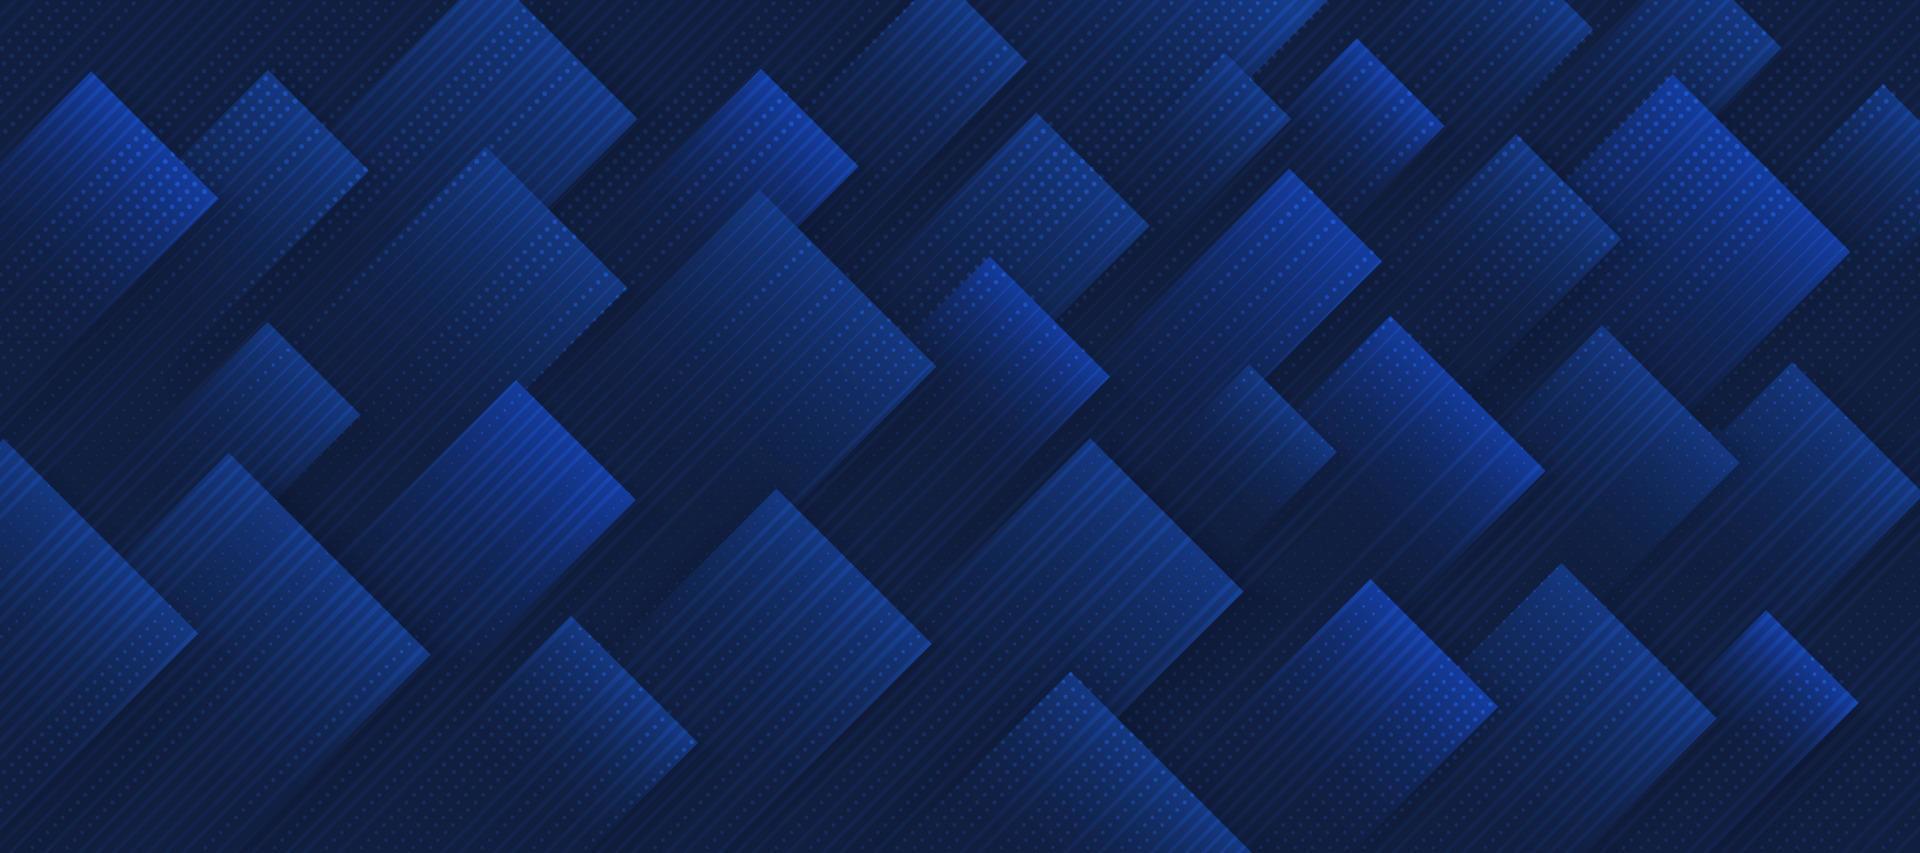 forma quadrada geométrica abstrata sobre fundo azul marinho escuro. design de padrão de retângulo em camadas de sobreposição de luxo. você pode usar para capa, modelo, pôster, banner web. vetor eps10